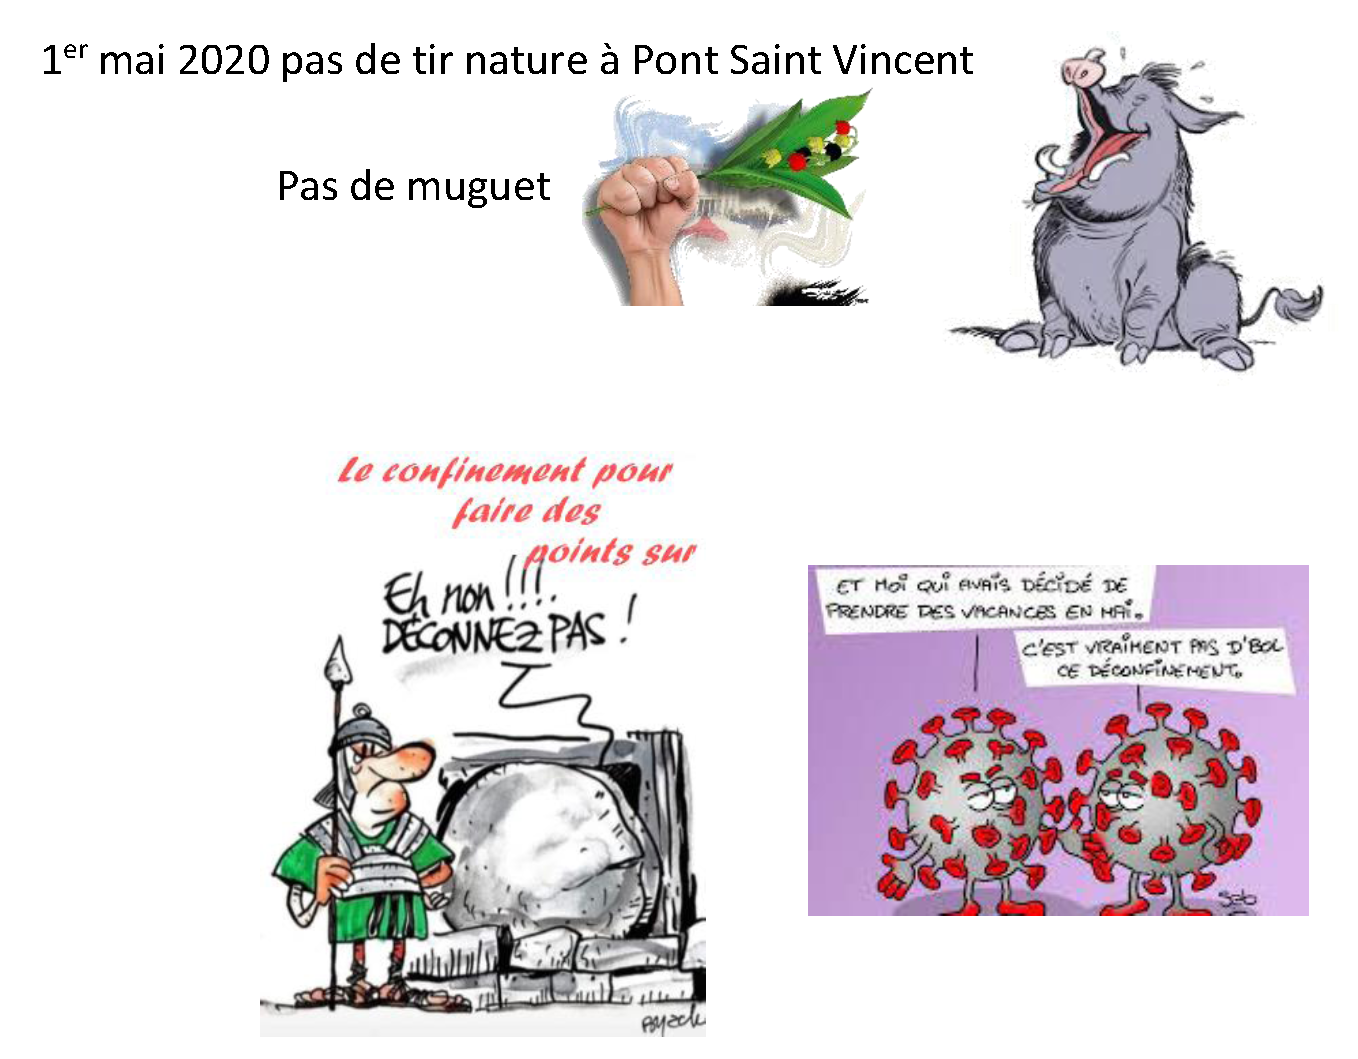 1er mai 2020 pas de tir nature Pont Saint Vincent